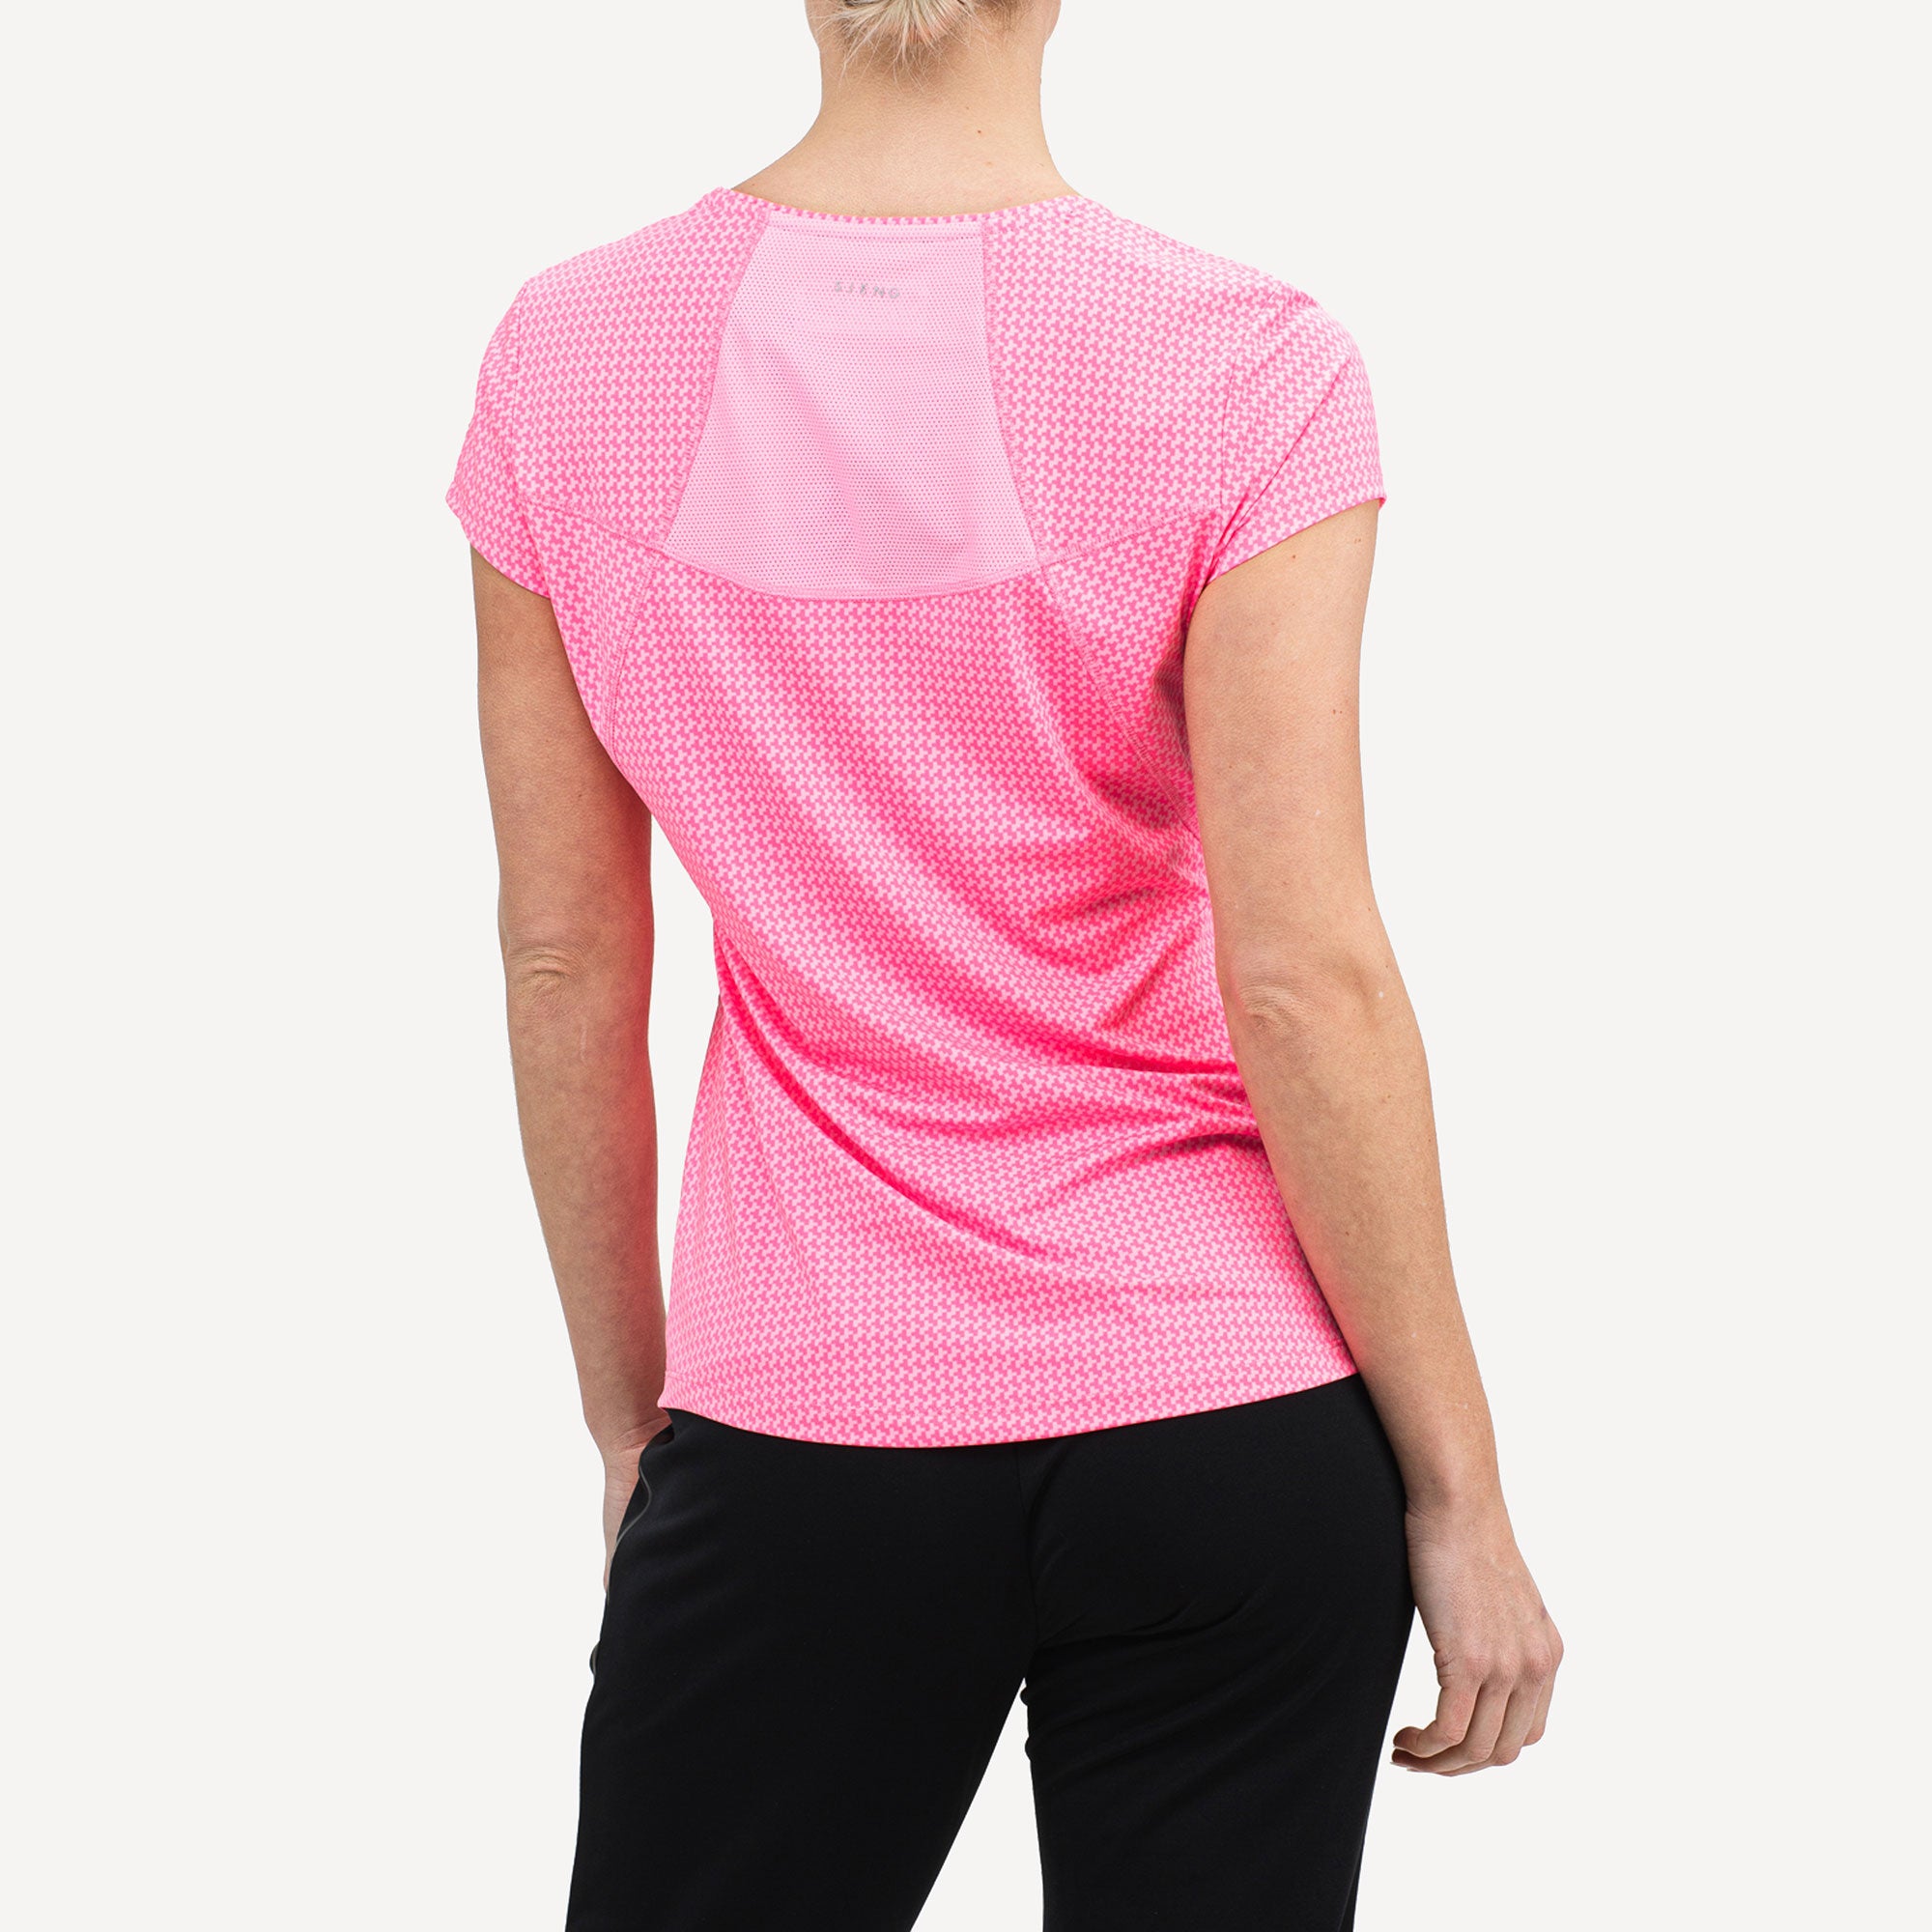 Sjeng Sports Evelyn Women's Tennis Shirt Pink (2)